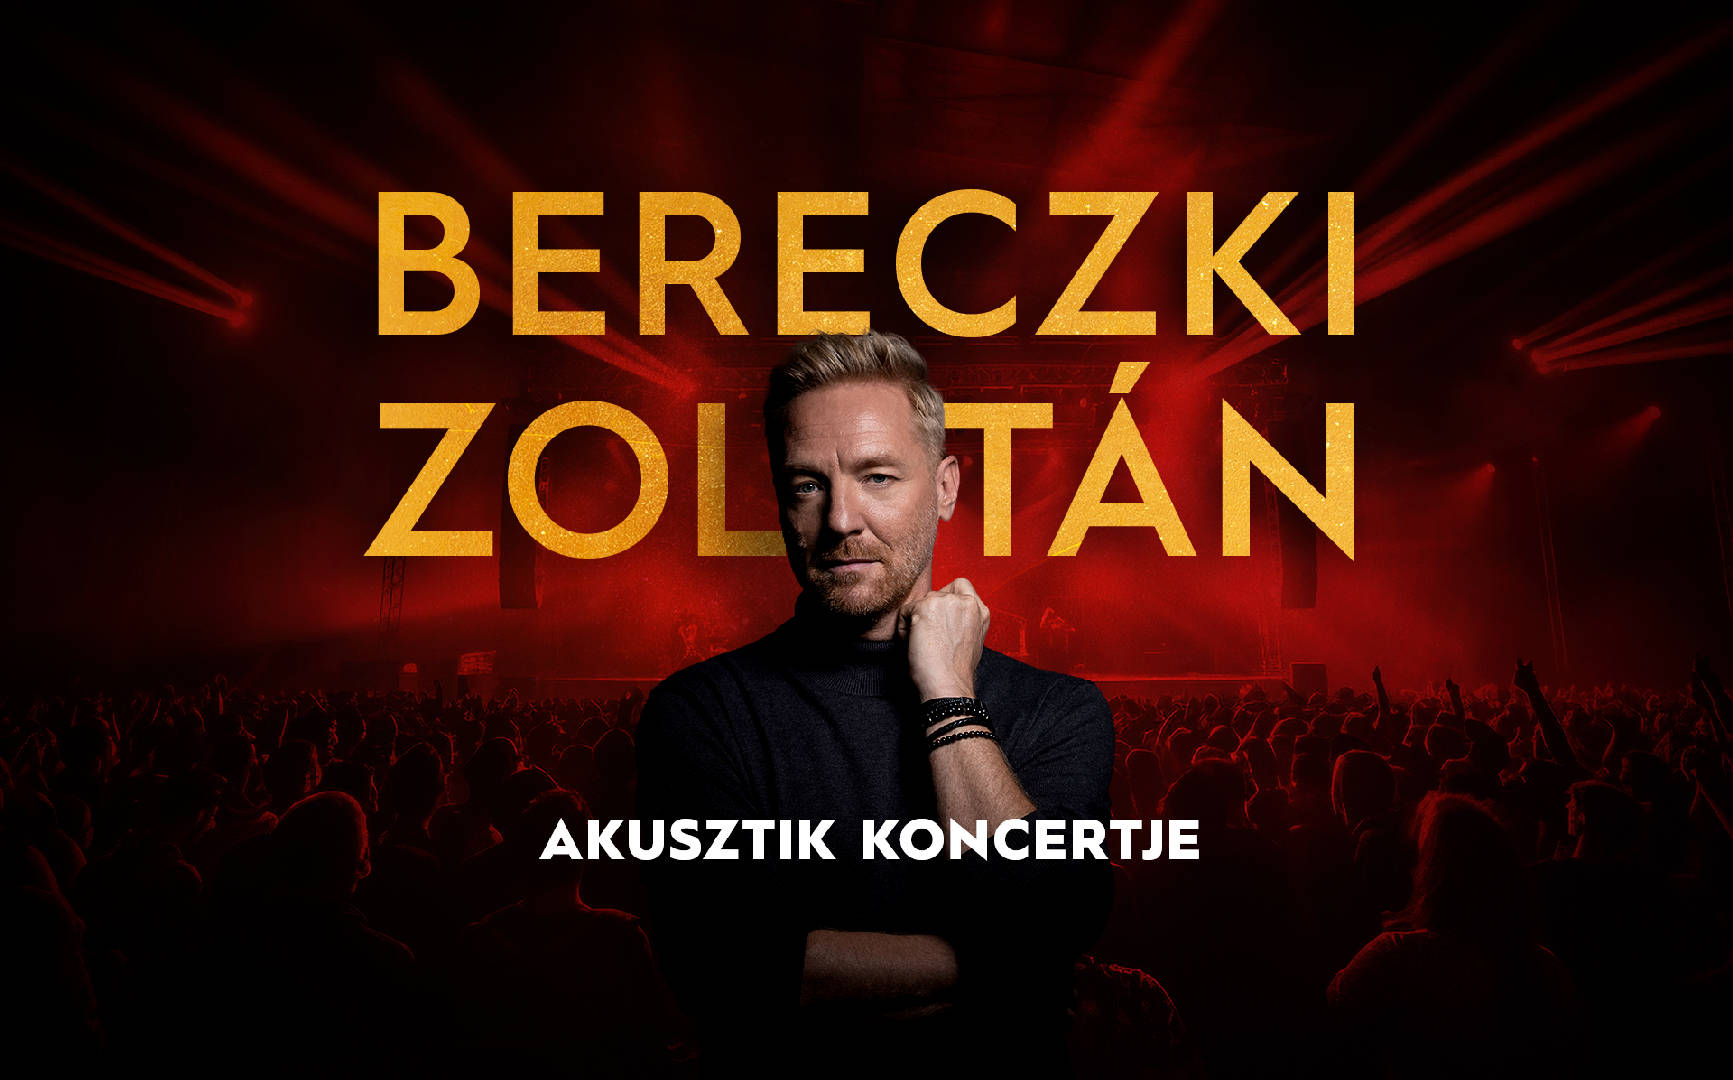 Bereczki Zoltán koncert - SZEGED